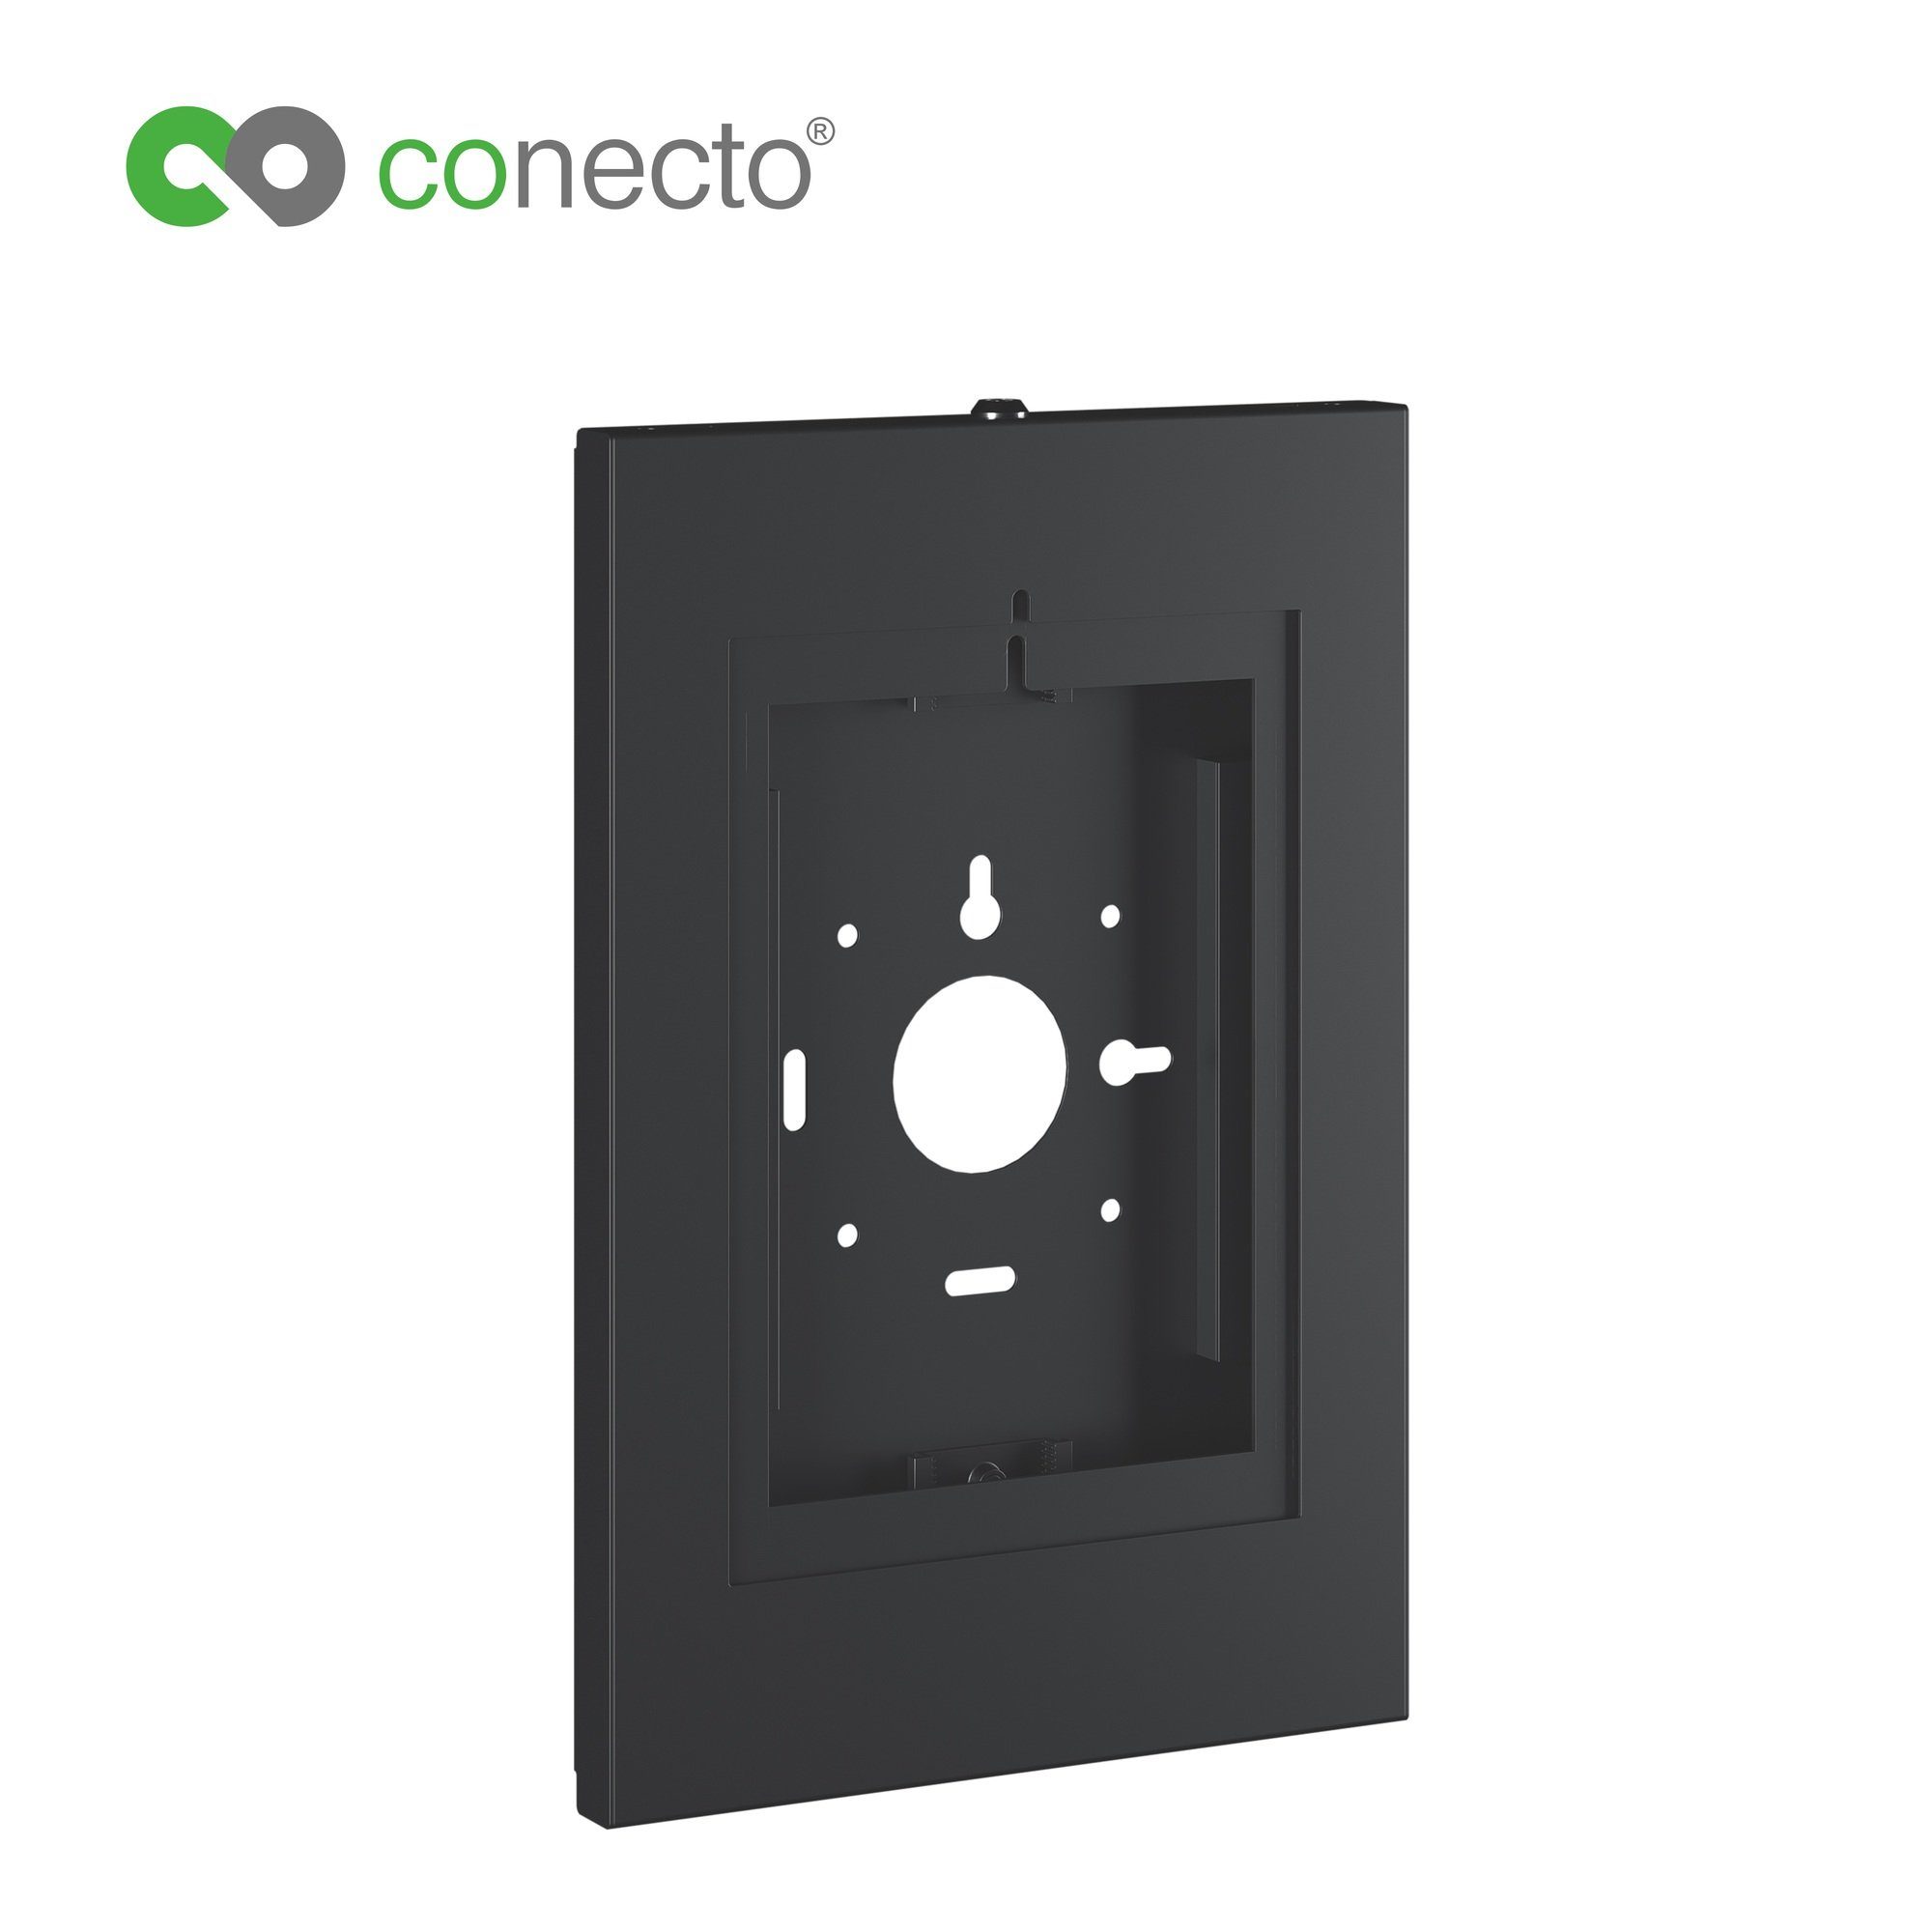 conecto conecto Wandhalterung für Tablet, abschließbares Stahlgehäuse für Tab Tablet-Halterung